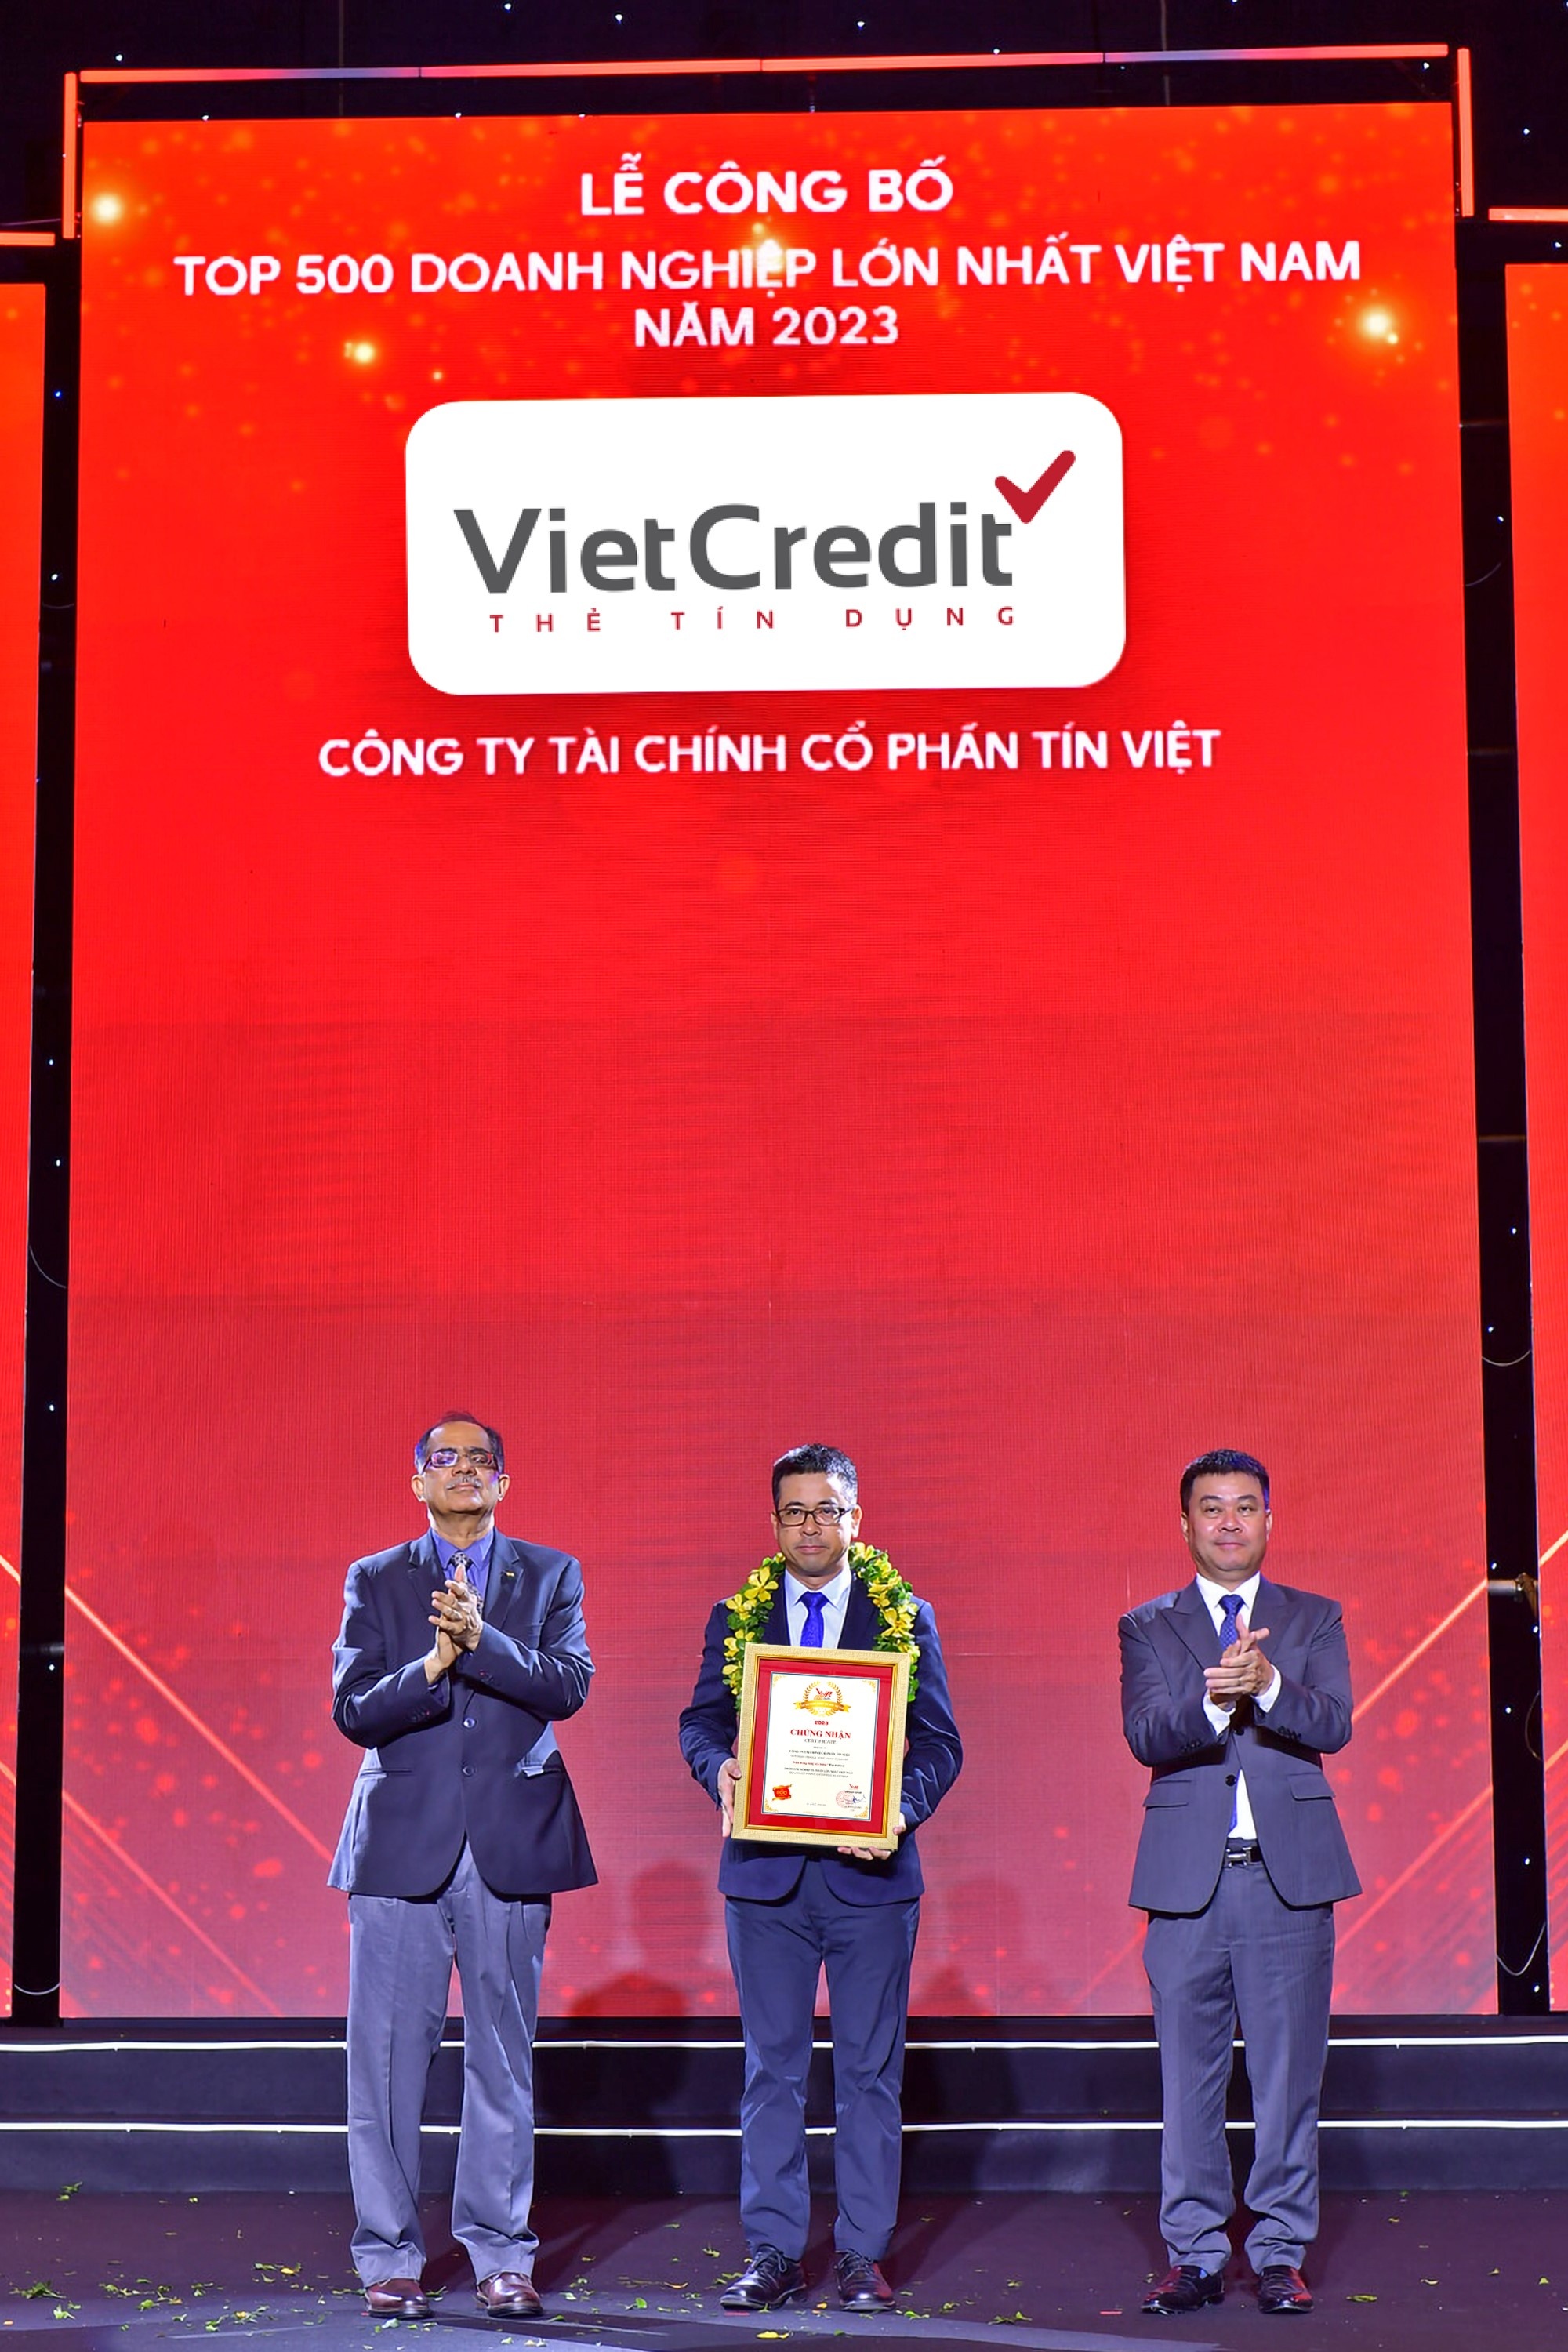 Đại diện VietCredit nhận giải thưởng Top 500 Doanh nghiệp lớn nhất Việt Nam 2023